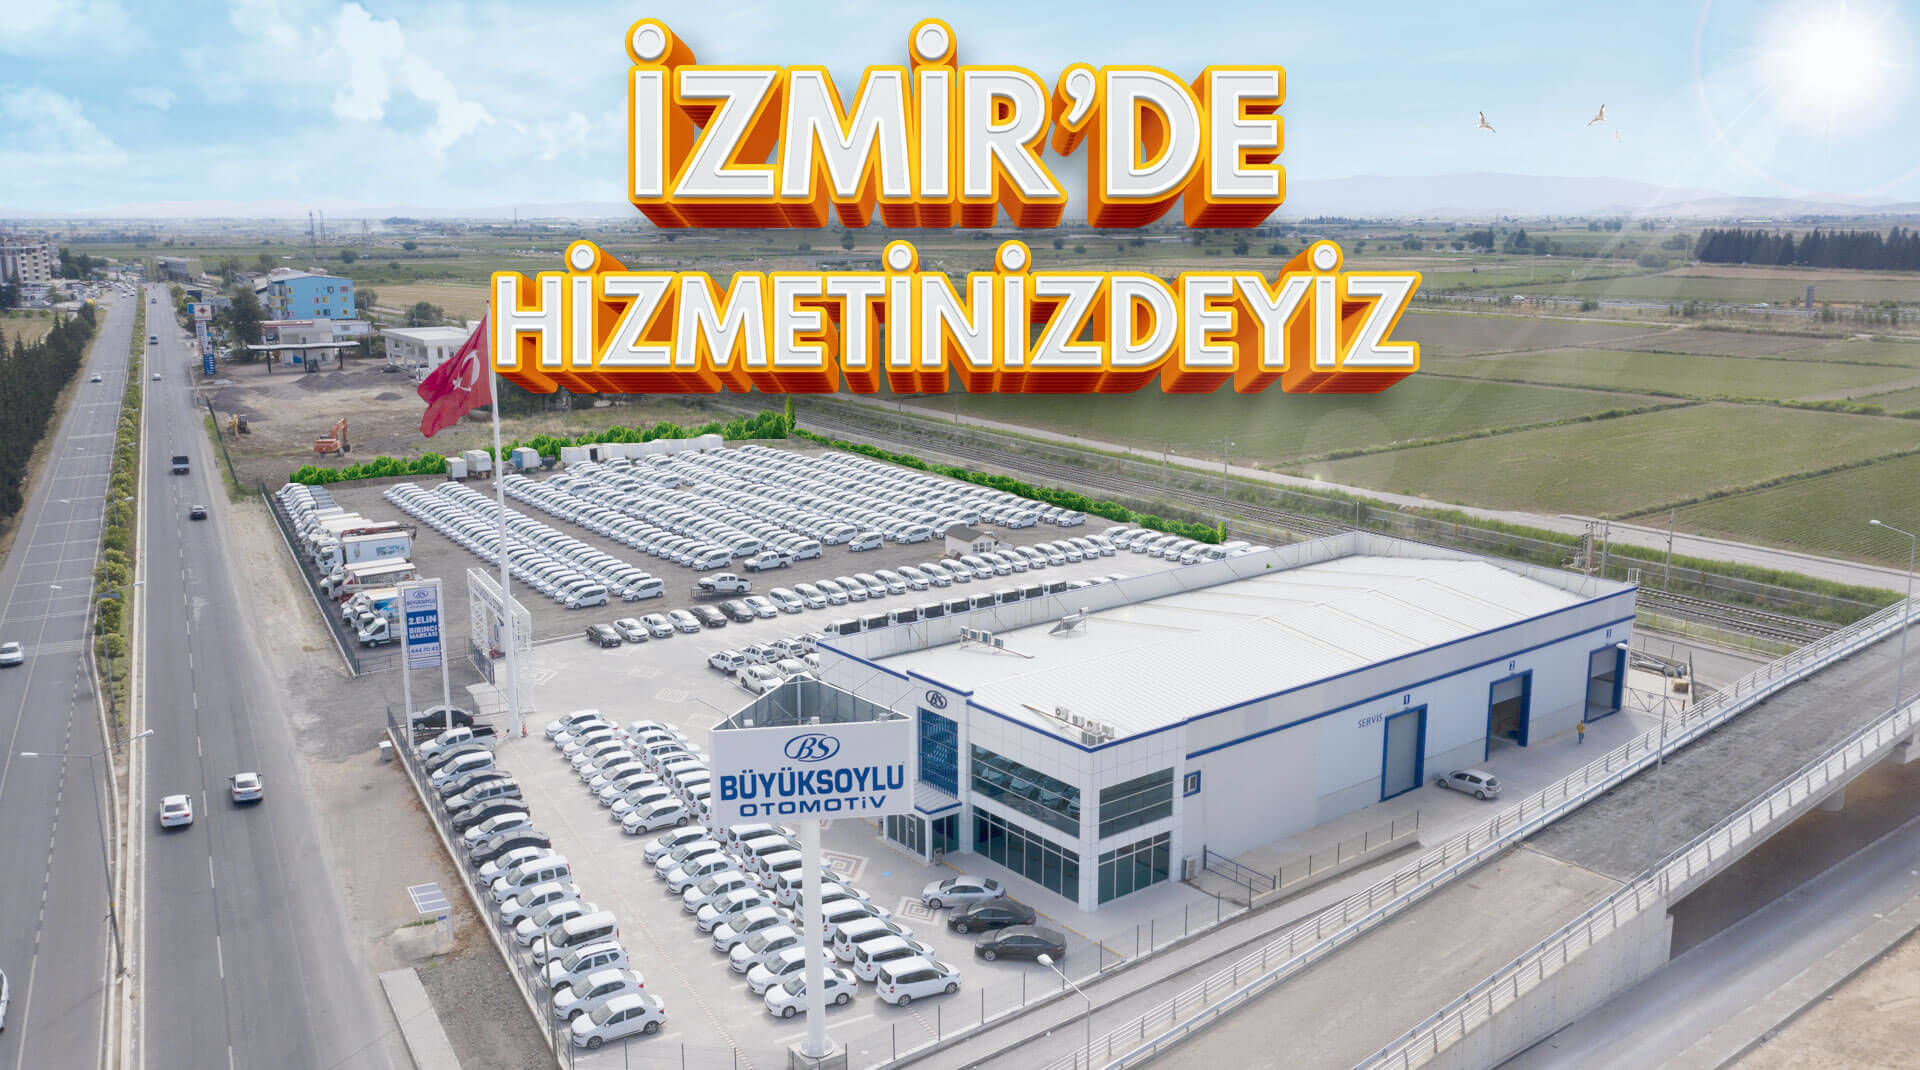 <p>İzmir'de<br />Hizmetinizdeyiz</p>